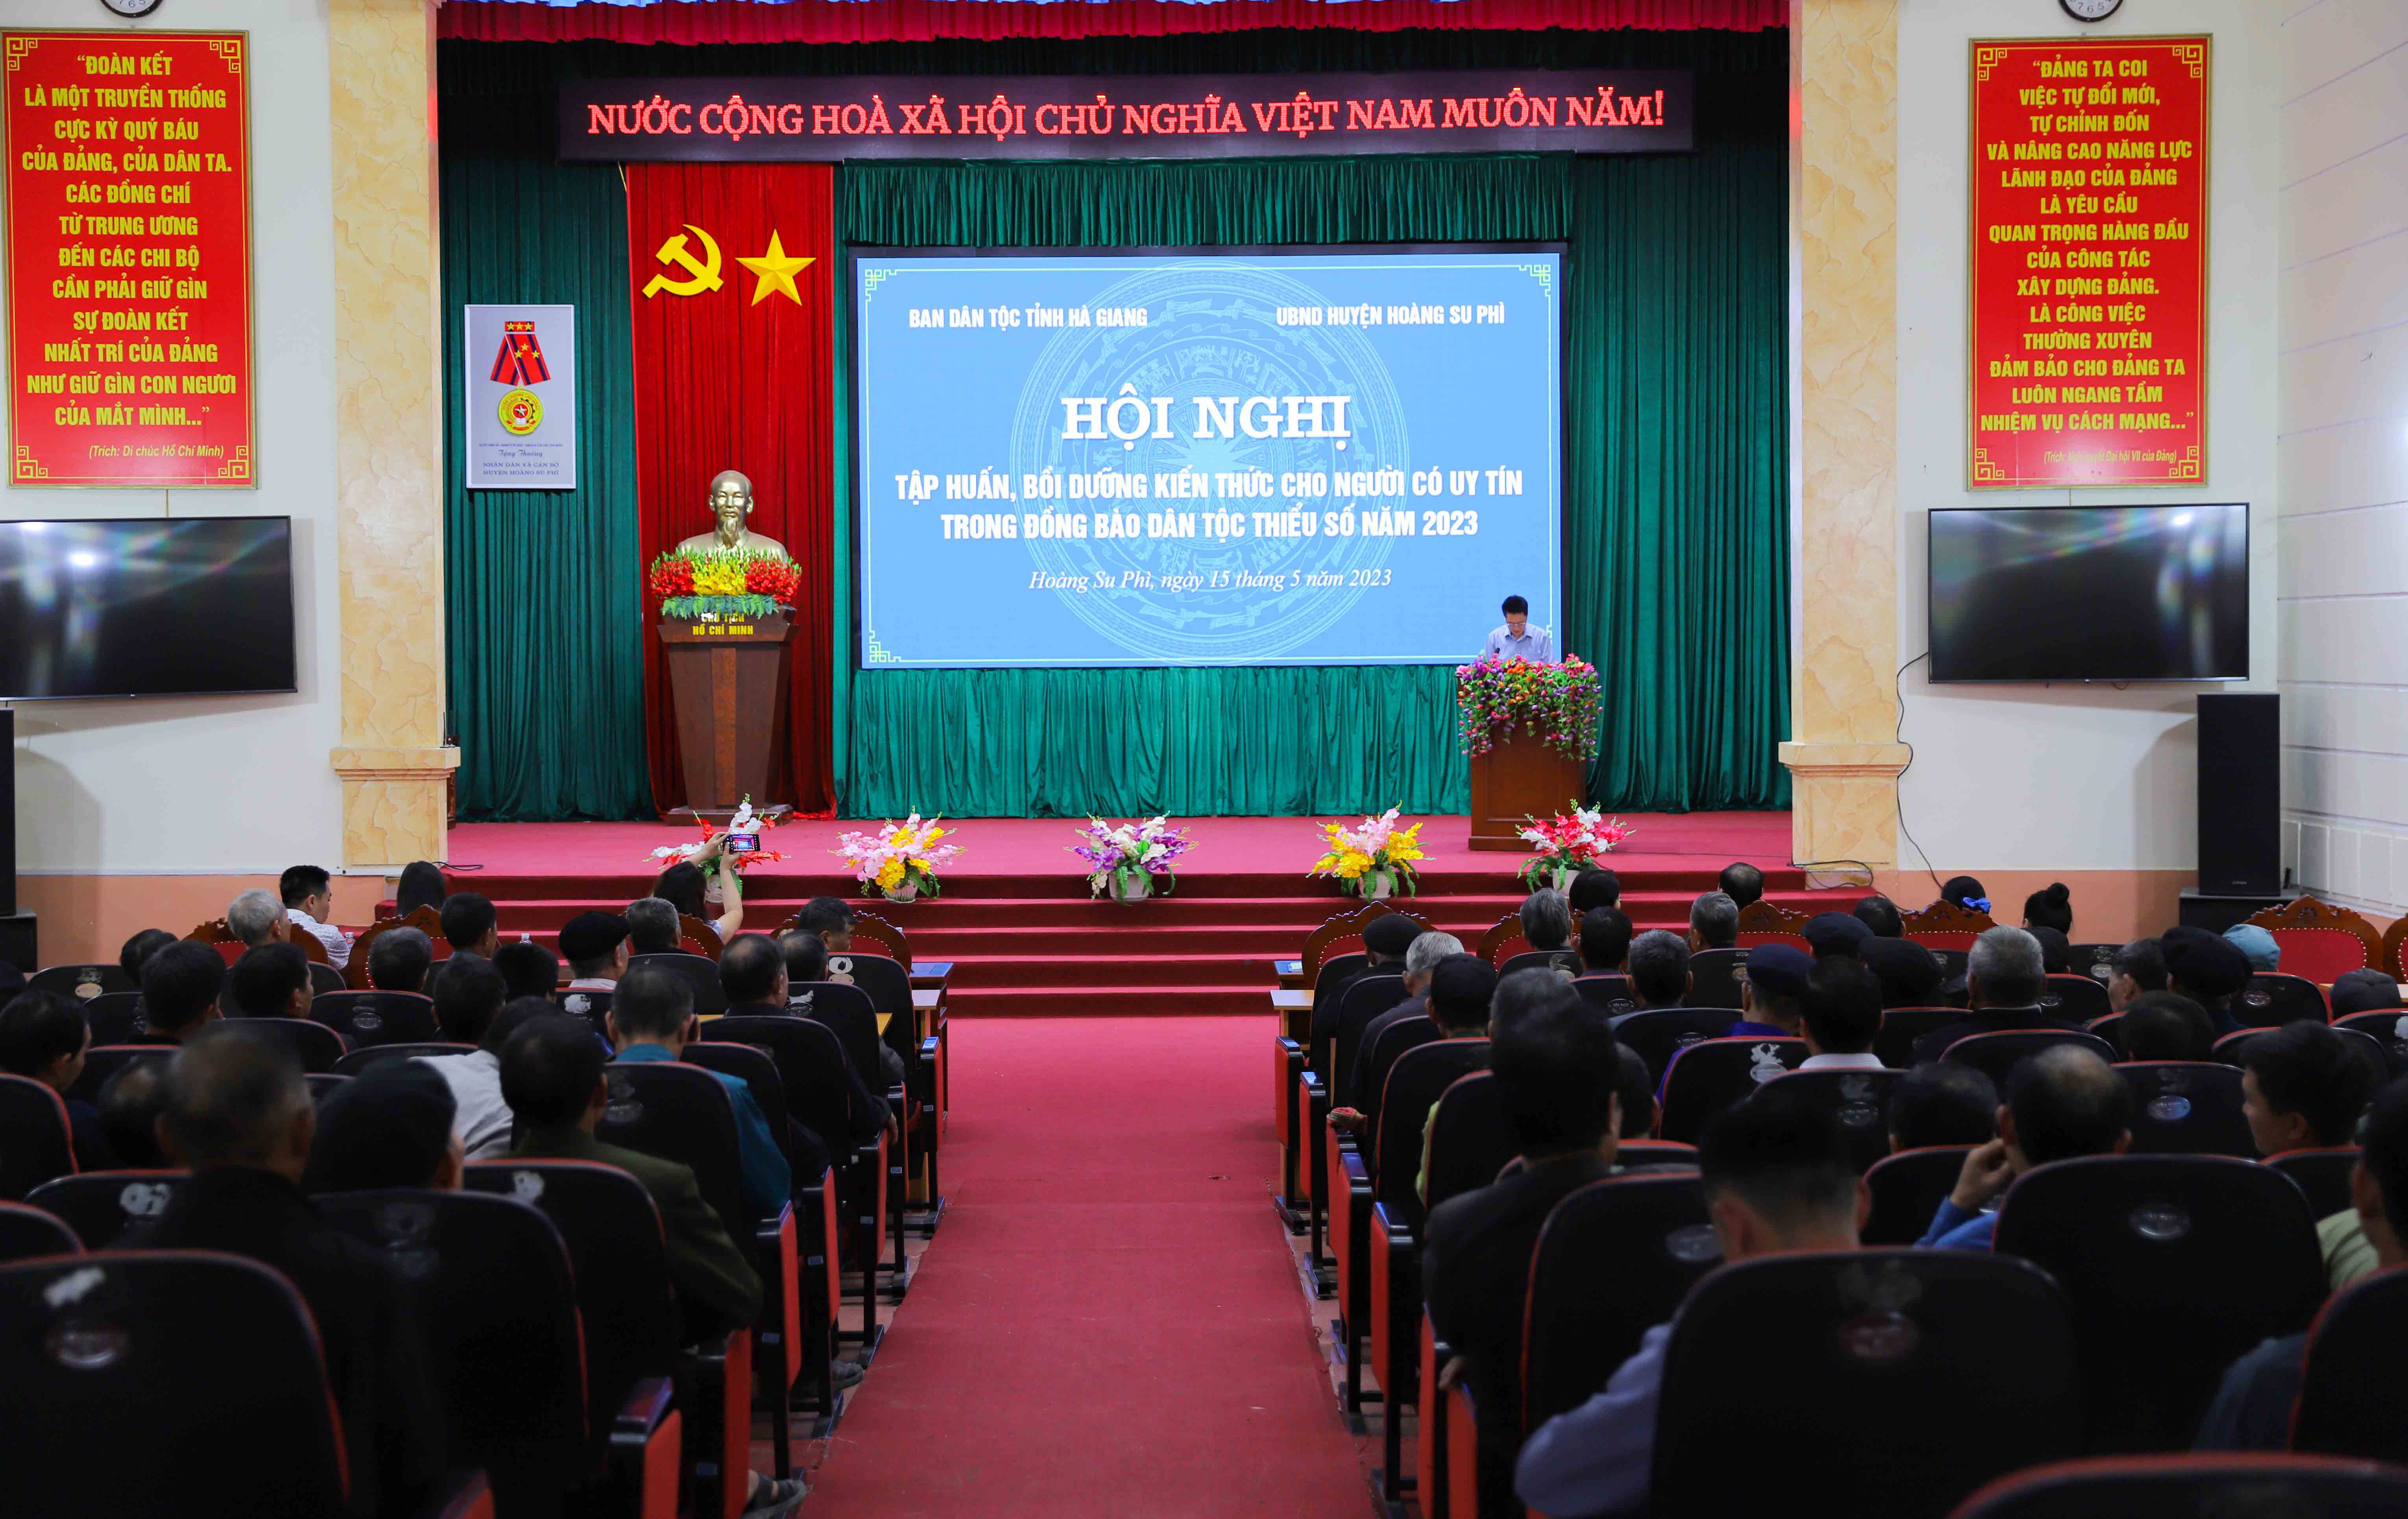 Tập huấn, bồi dưỡng kiến thức cho người có uy tín trong đồng bào dân tộc thiểu số huyện Hoàng Su Phì